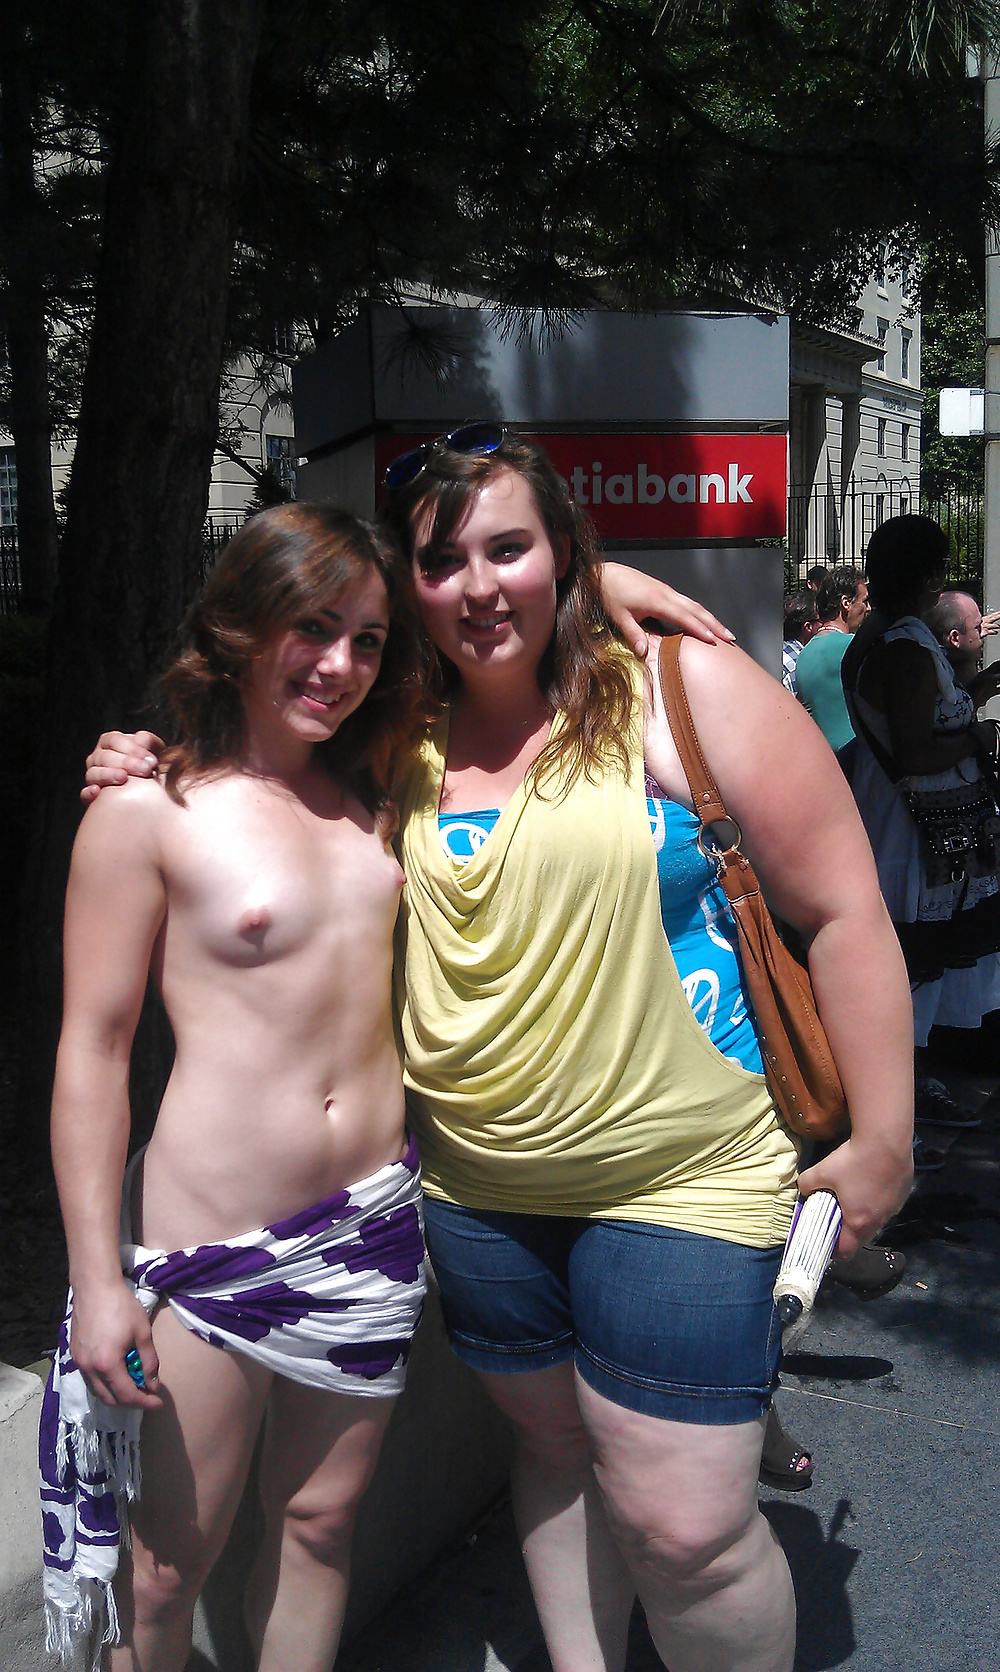 Toronto Pride Girl Naked In Public - Photo #8.